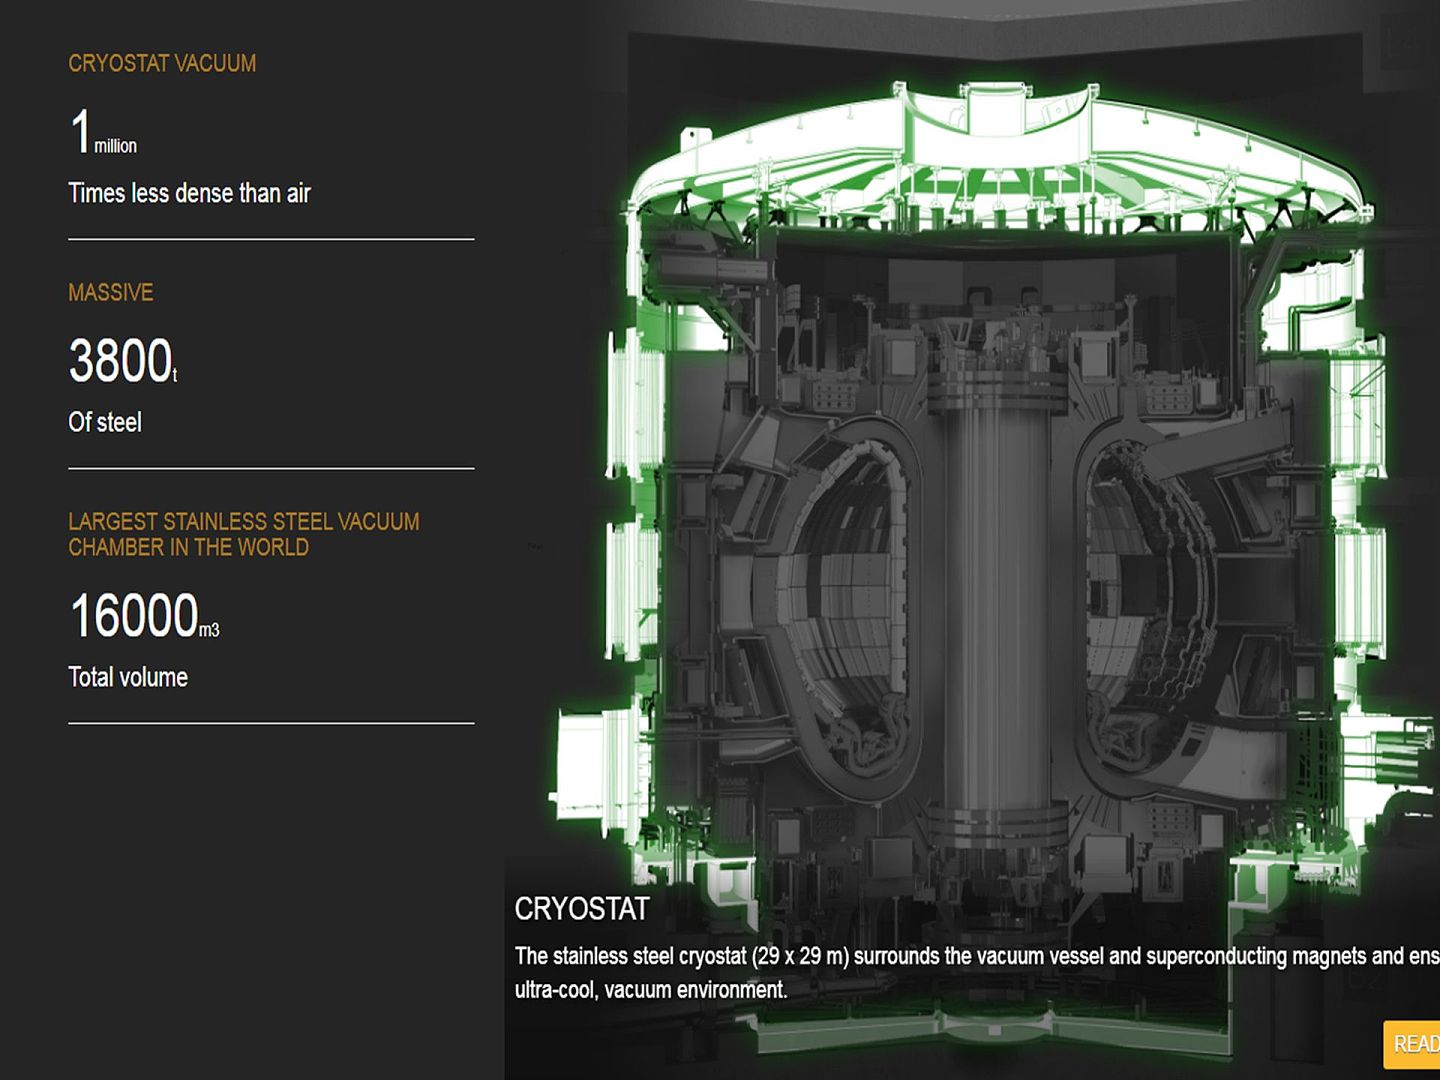 ITER装置的低温恒定器。低温恒定器高29米、直径29米，内部容积16,000立方米，是世界上最大的不锈钢真空室，围绕真空容器和磁体保障内部处于超低温和真空状态，由印度负责制造。（ITER官网）